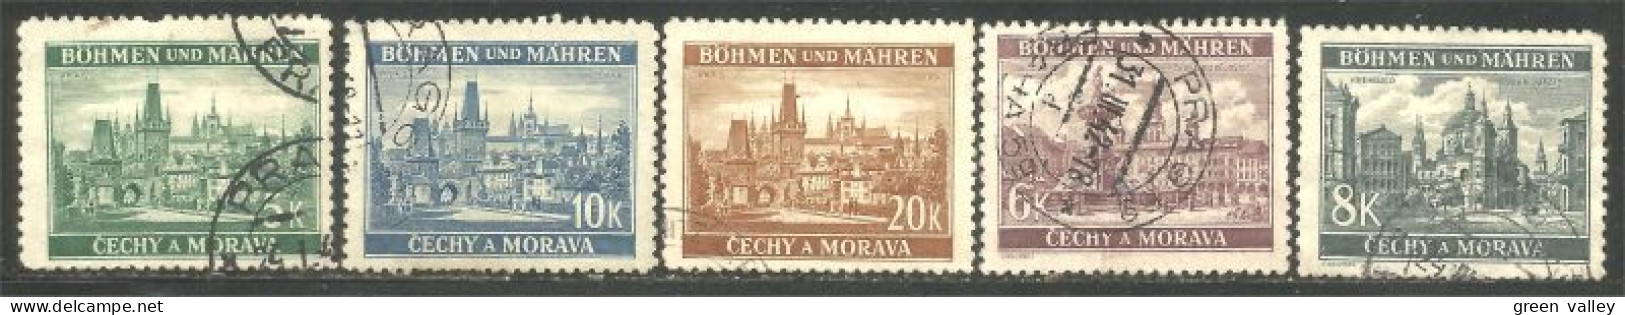 290 Bohmen Mahren Monuments 1939-40 (CZE-403) - Usati